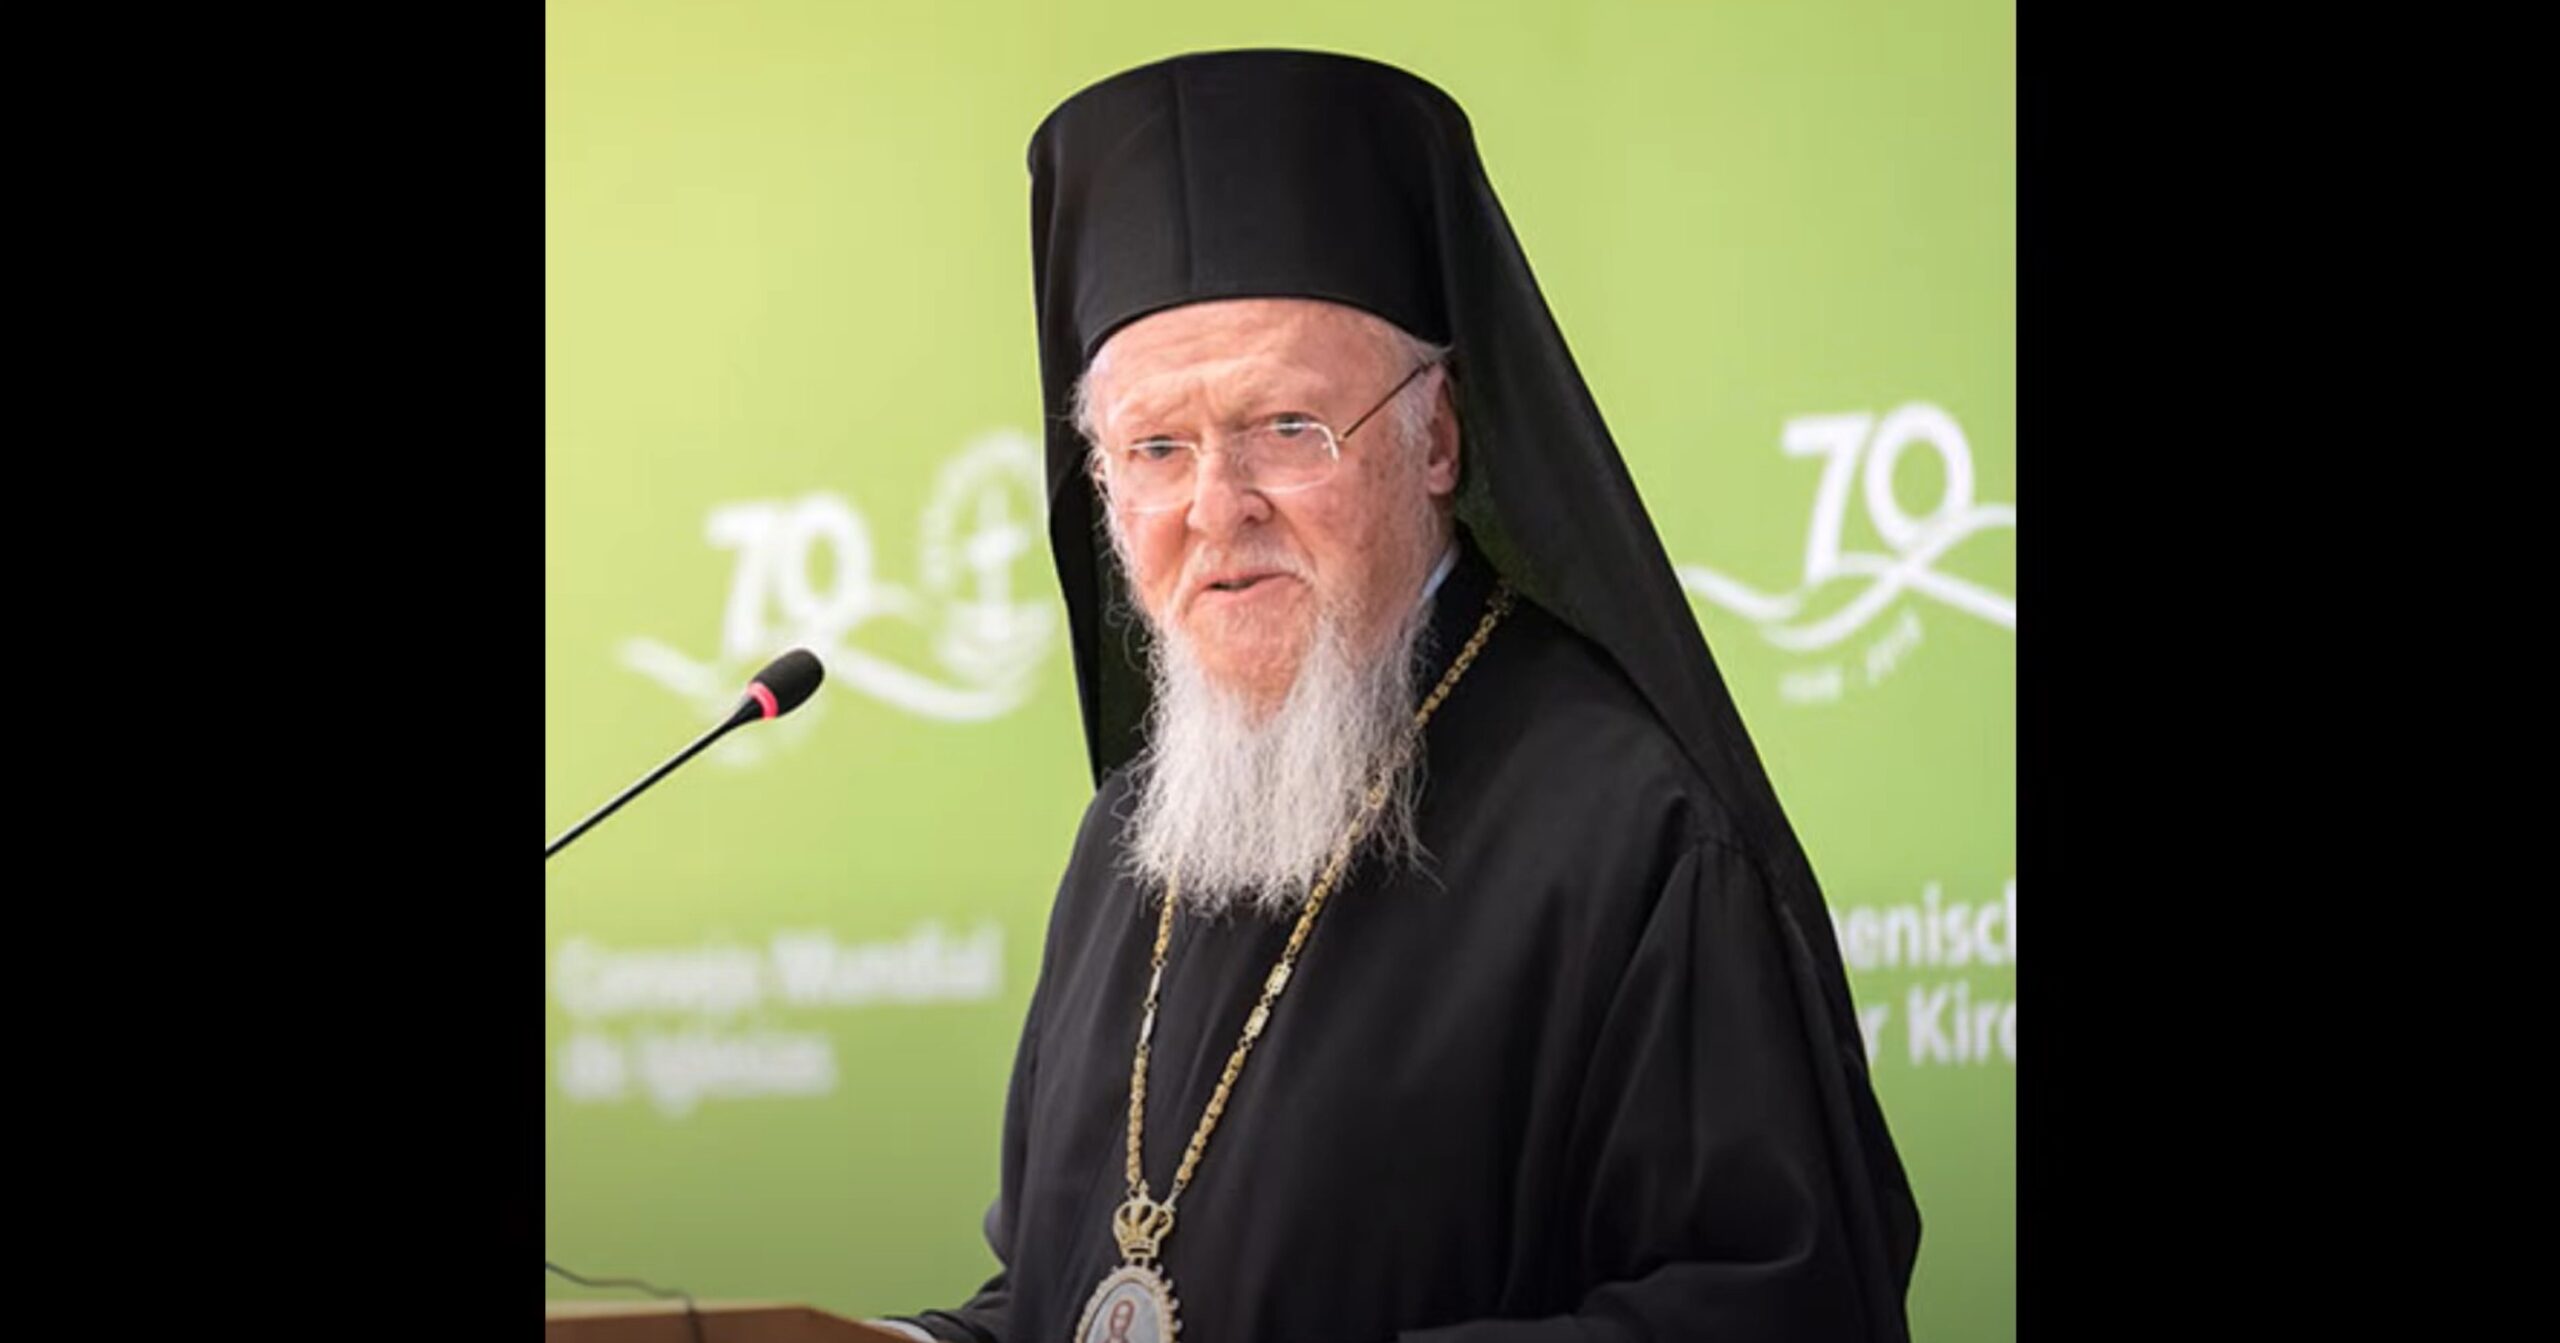 Le discours du patriarche bartholomée prononcé à l'assemblée générale de la kek à talinn